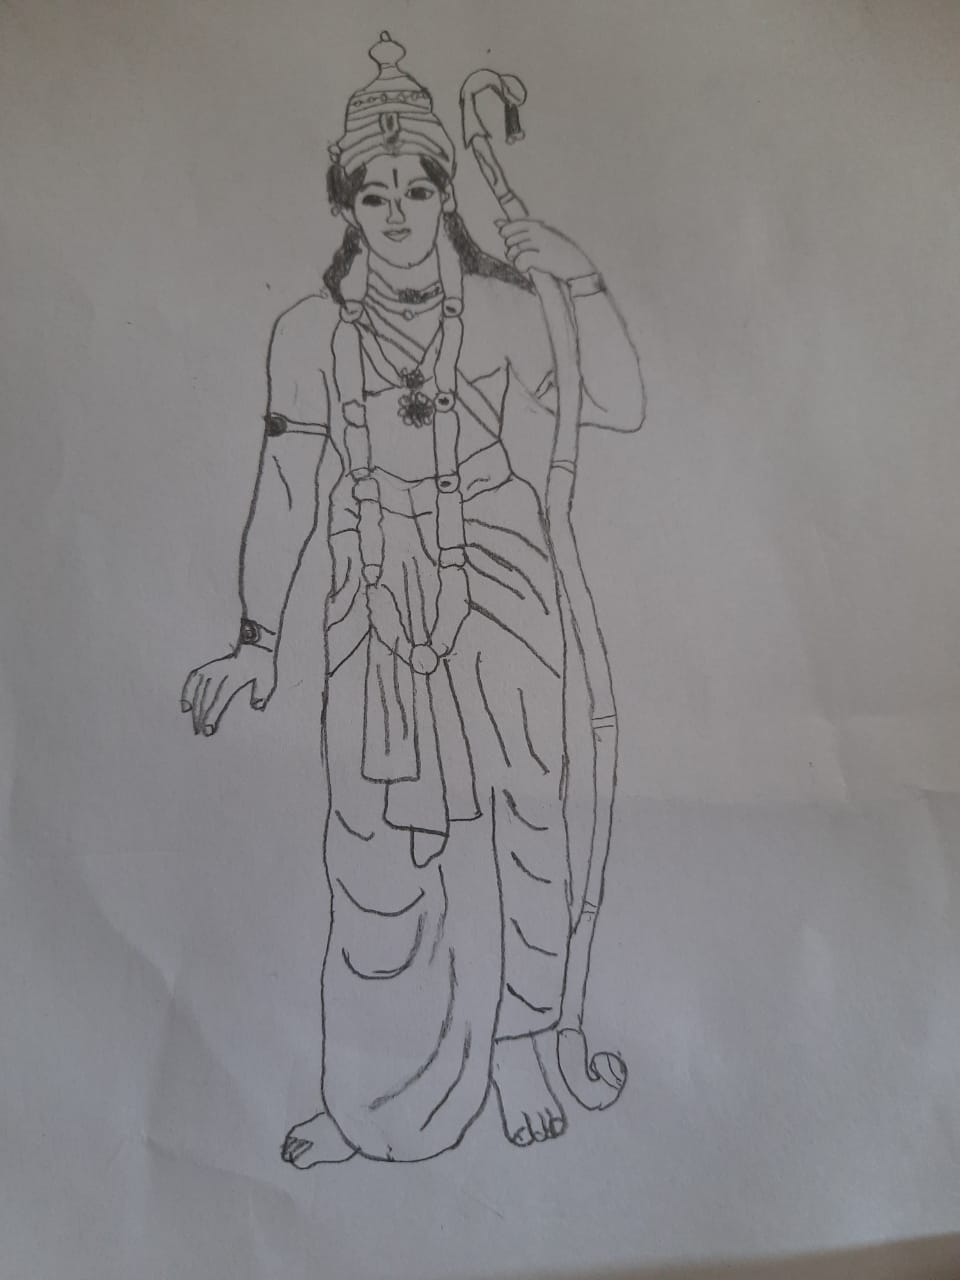 Lord rama with bow arrow killimg ravana. Illustration of lord rama with bow  arrow killing ravana. | CanStock